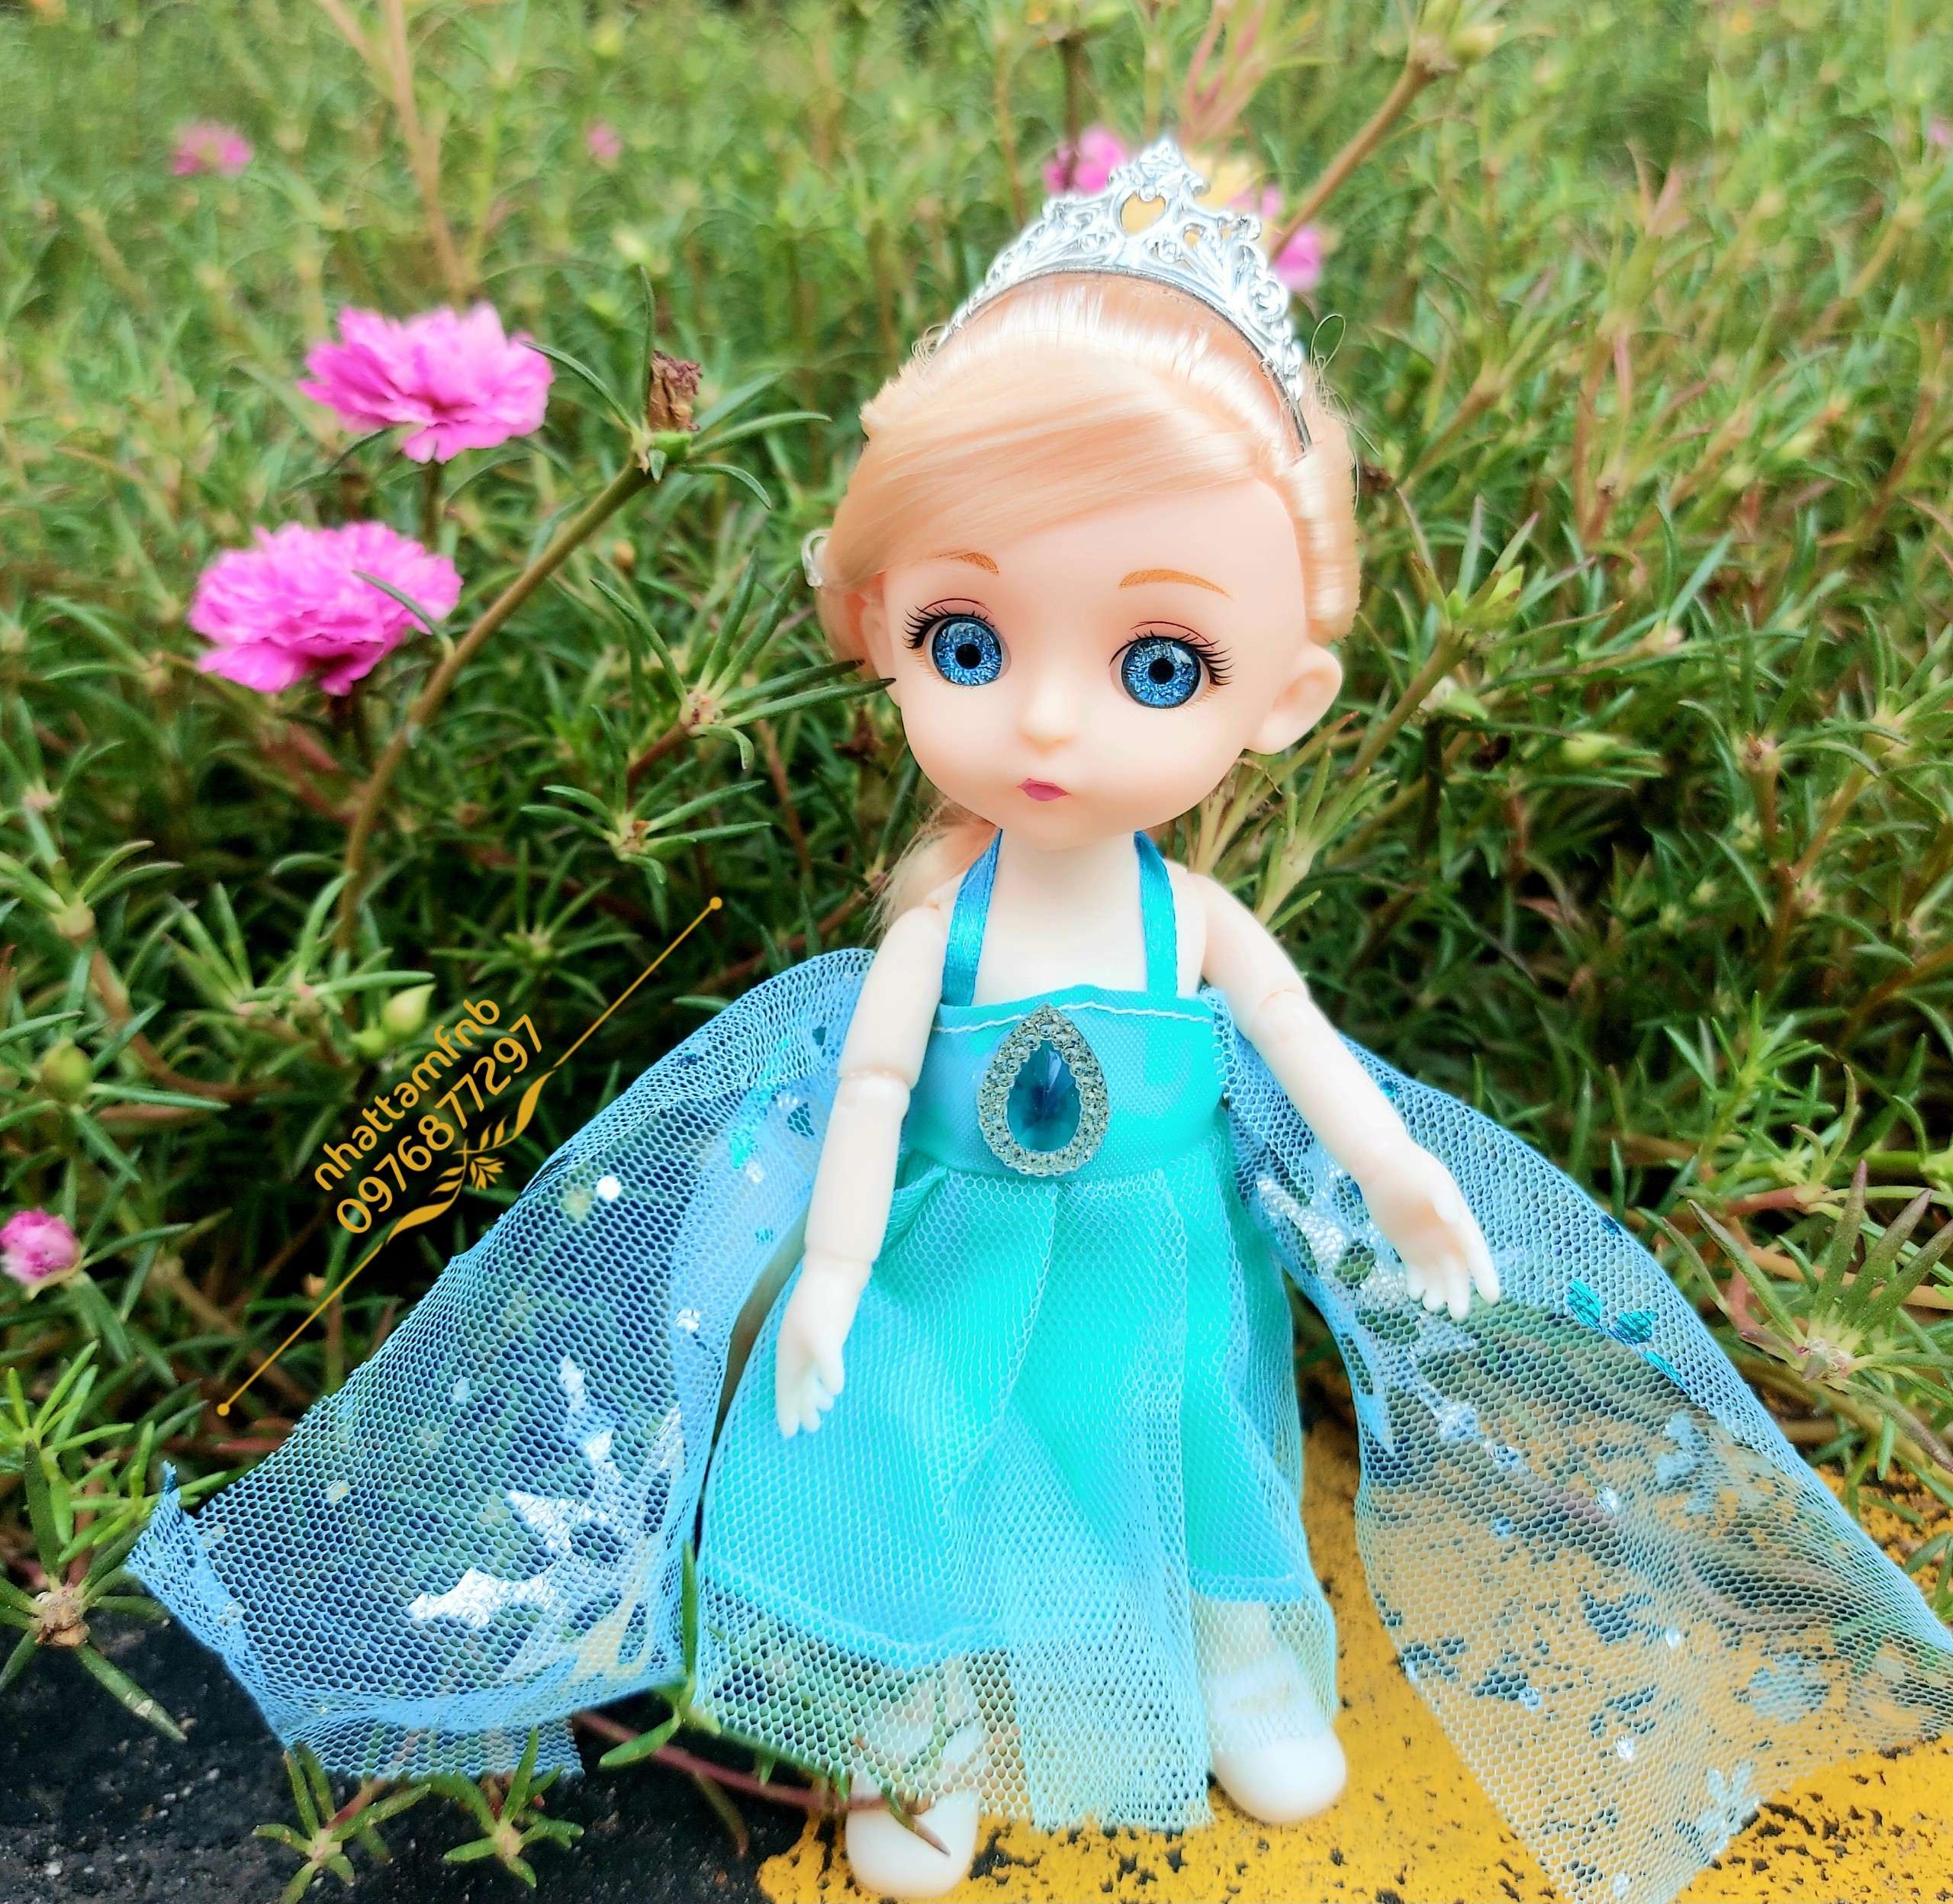 Váy đầm công chúa Elsa